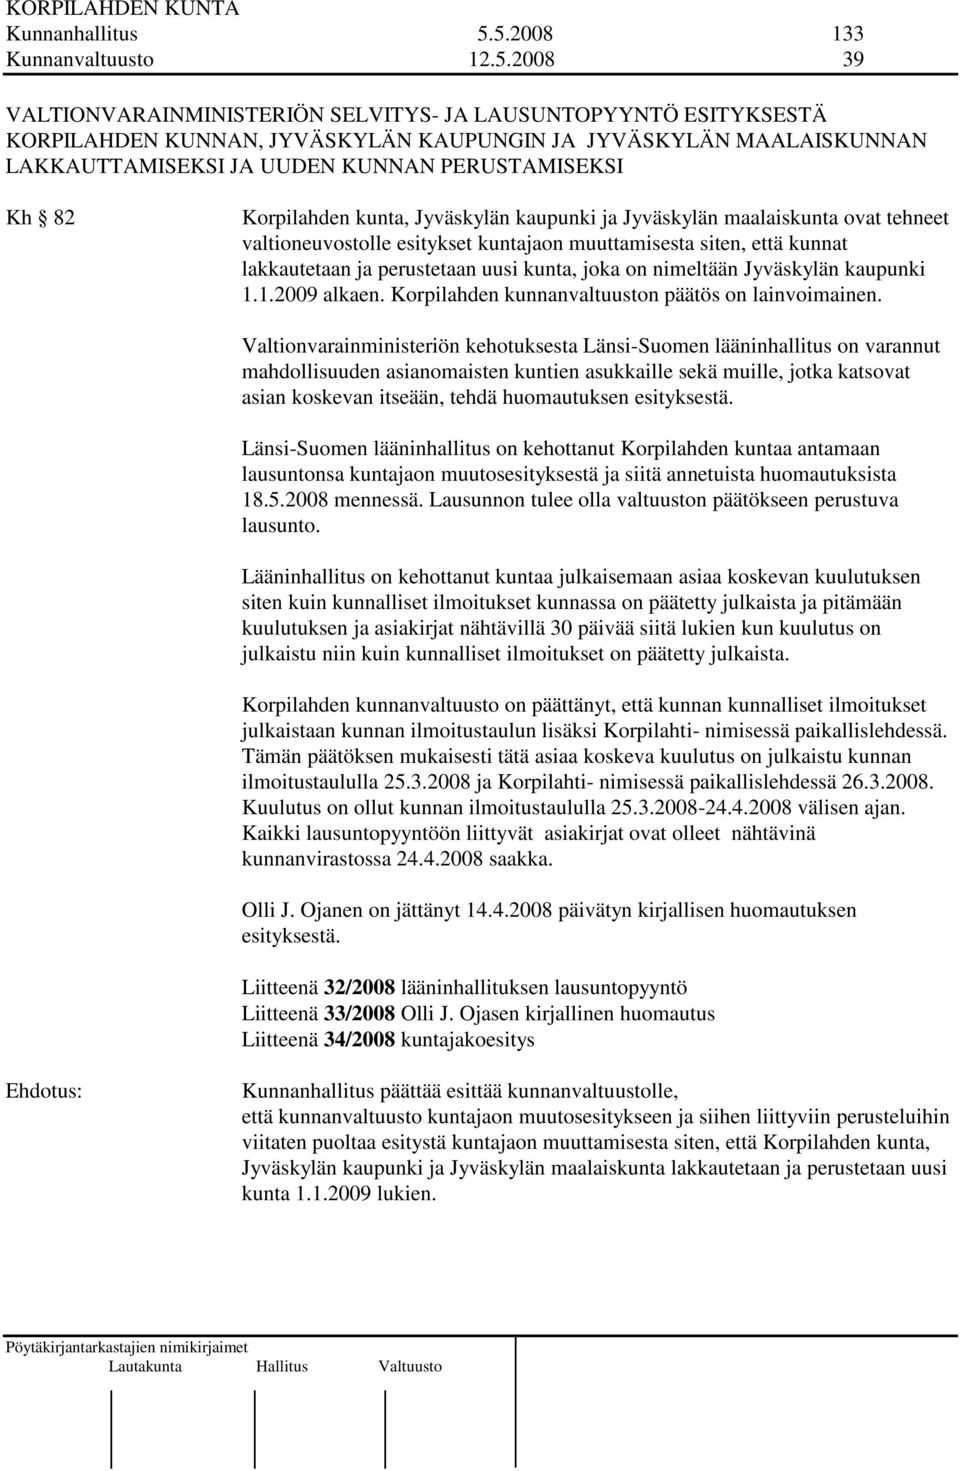 KUNNAN PERUSTAMISEKSI Kh 82 Korpilahden kunta, Jyväskylän kaupunki ja Jyväskylän maalaiskunta ovat tehneet valtioneuvostolle esitykset kuntajaon muuttamisesta siten, että kunnat lakkautetaan ja